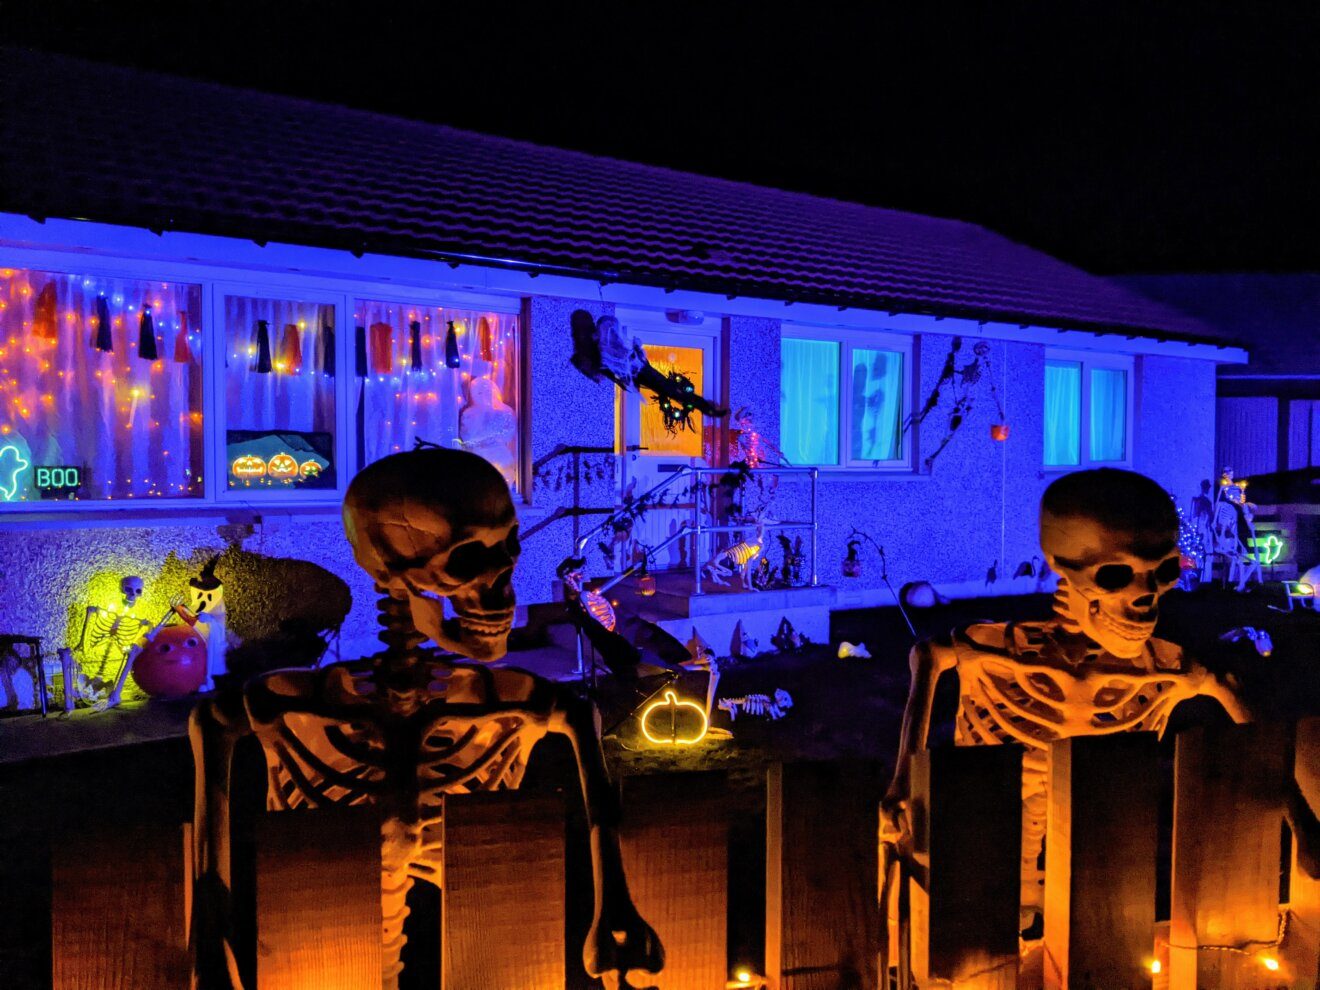 Halloween house raises hundreds for charity